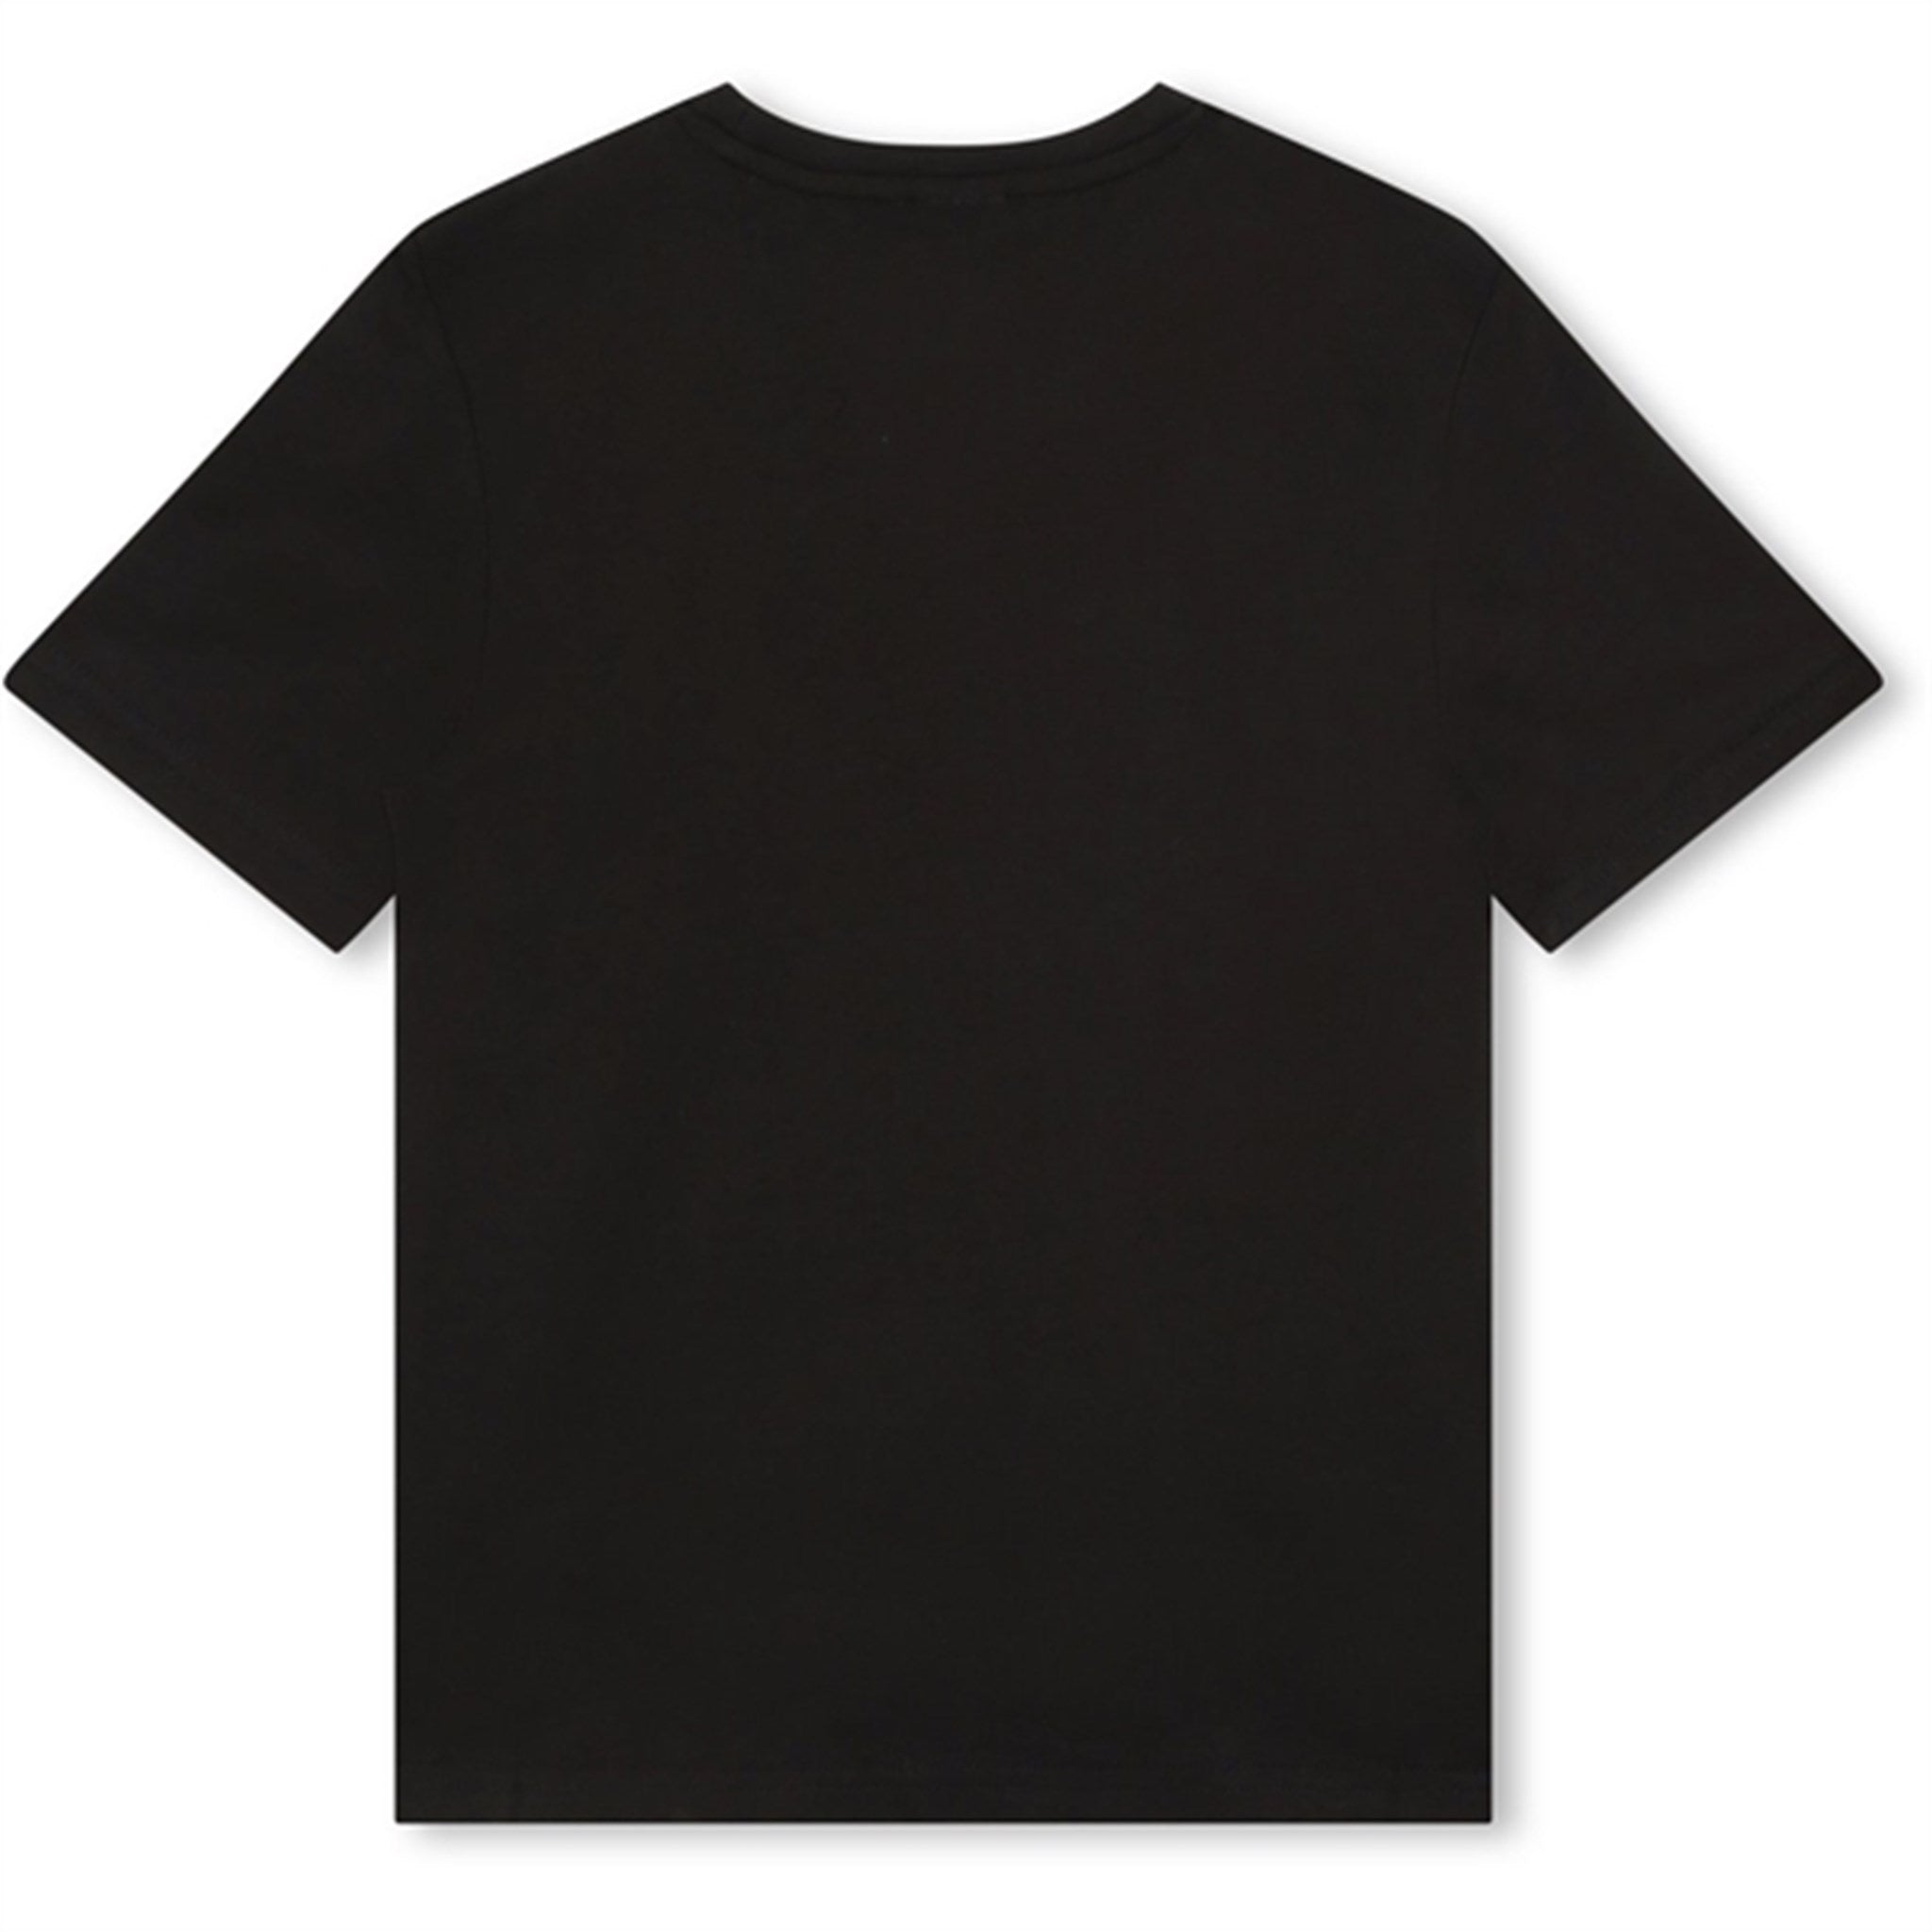 Hugo Boss T-shirt Black 2